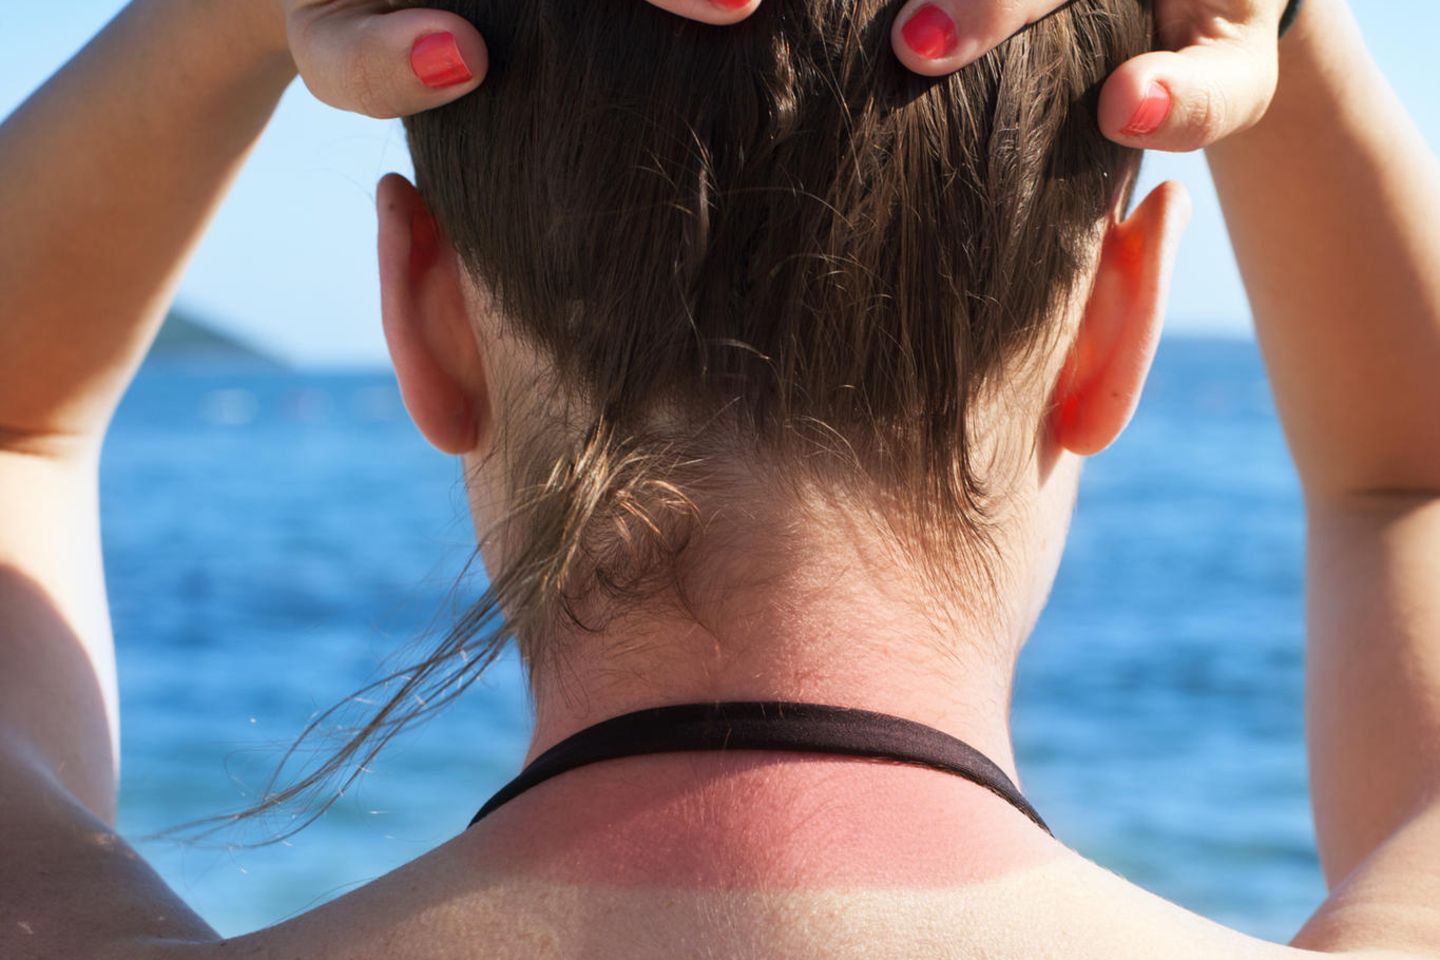 Sonnenbrand: Frau mit Sonnenbrand auf dem Nacken